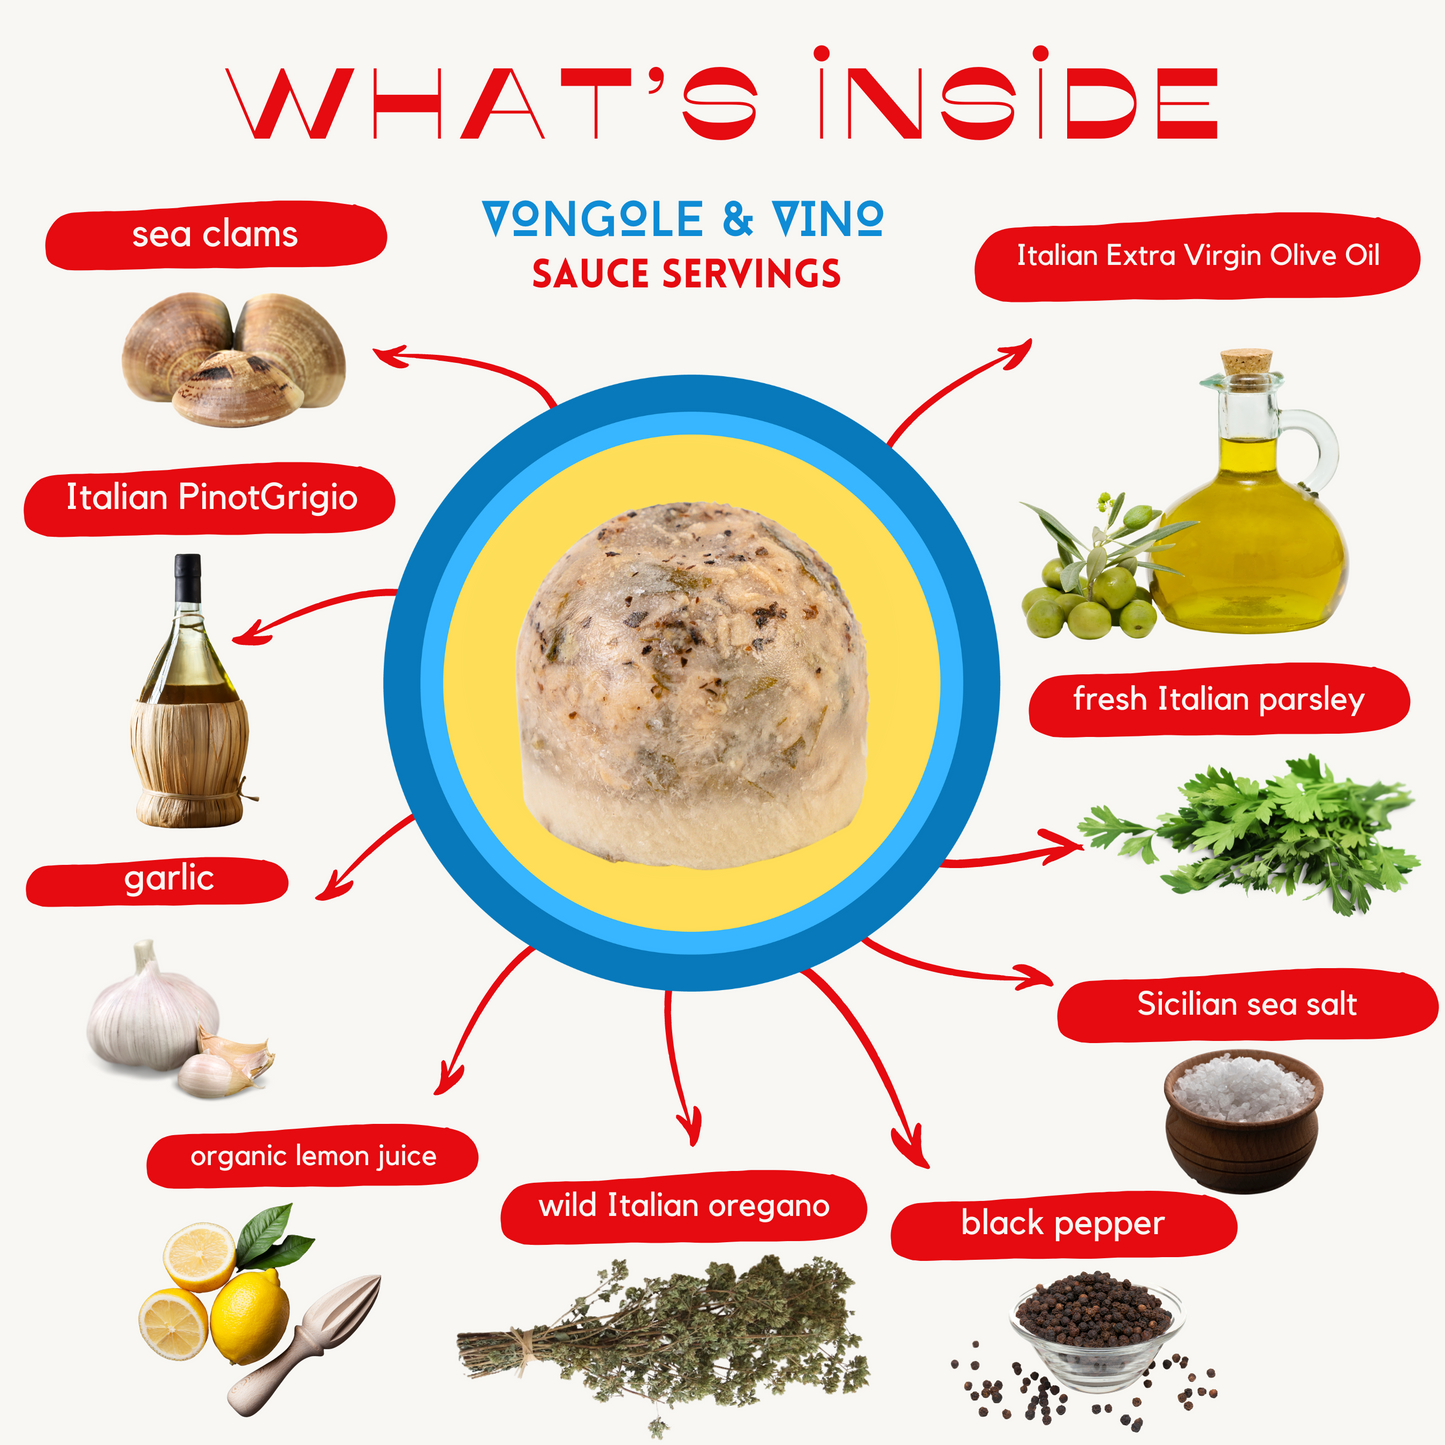 Vongole & Vino Sauce Servings